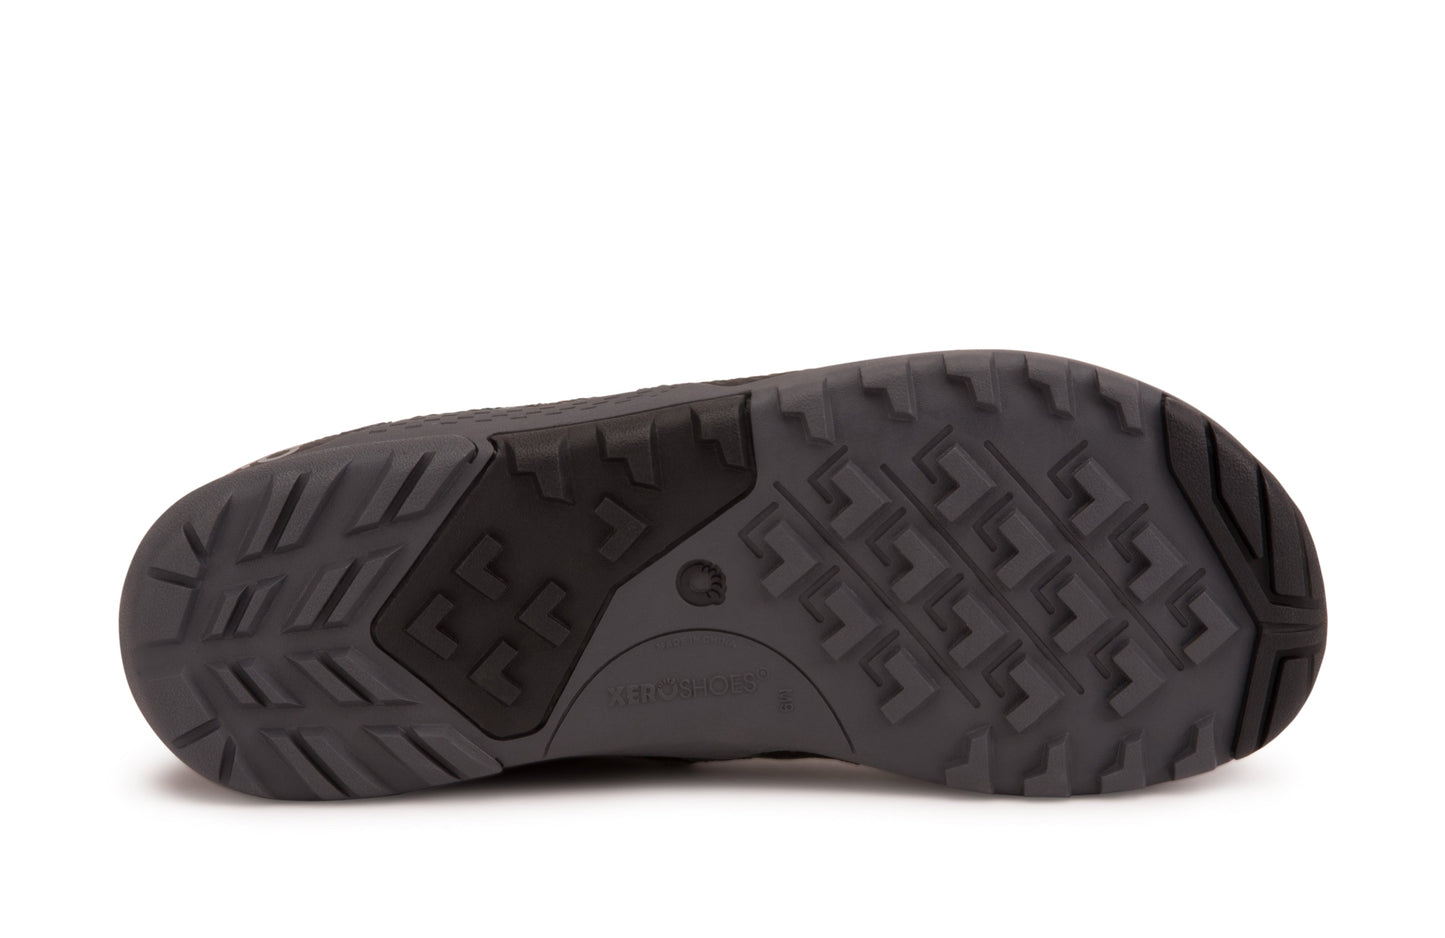 Xero Shoes Xcursion Fusion barfods støvler til mænd i farven spruce, saal